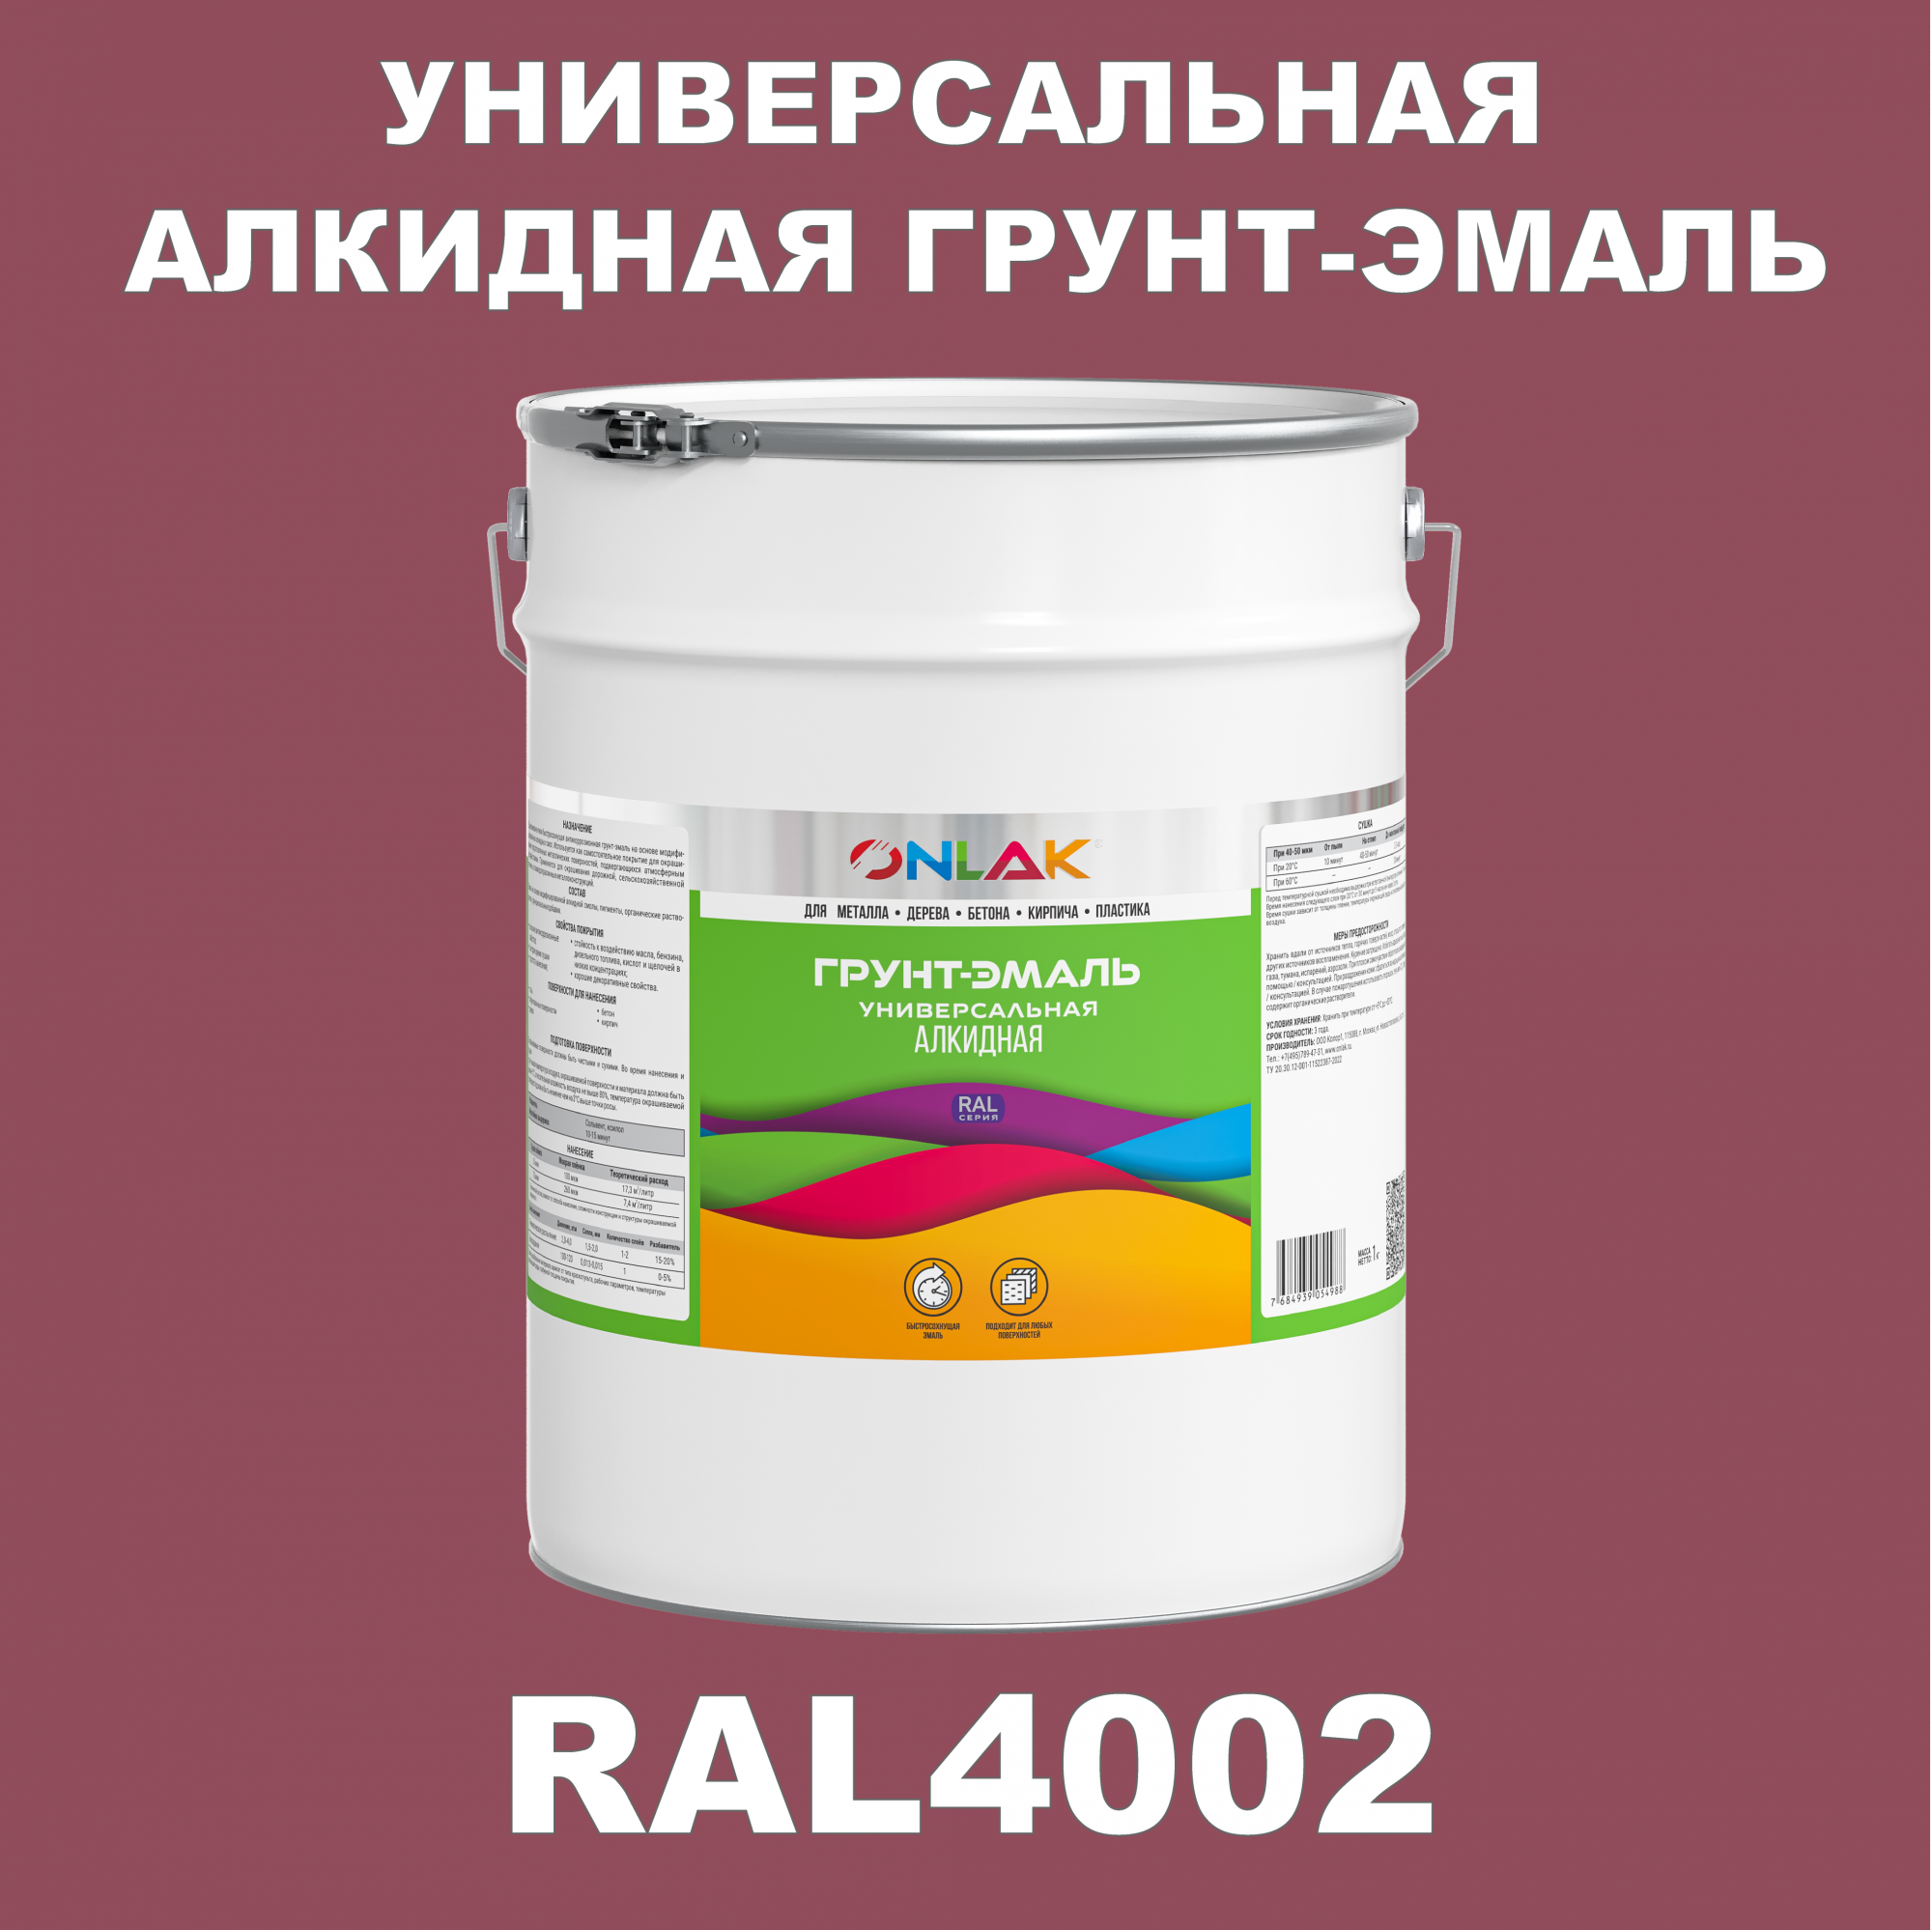 Грунт-эмаль ONLAK 1К RAL4002 антикоррозионная алкидная по металлу по ржавчине 20 кг антикоррозионная грунт эмаль onlak ral4001 фиолетовый 656 мл